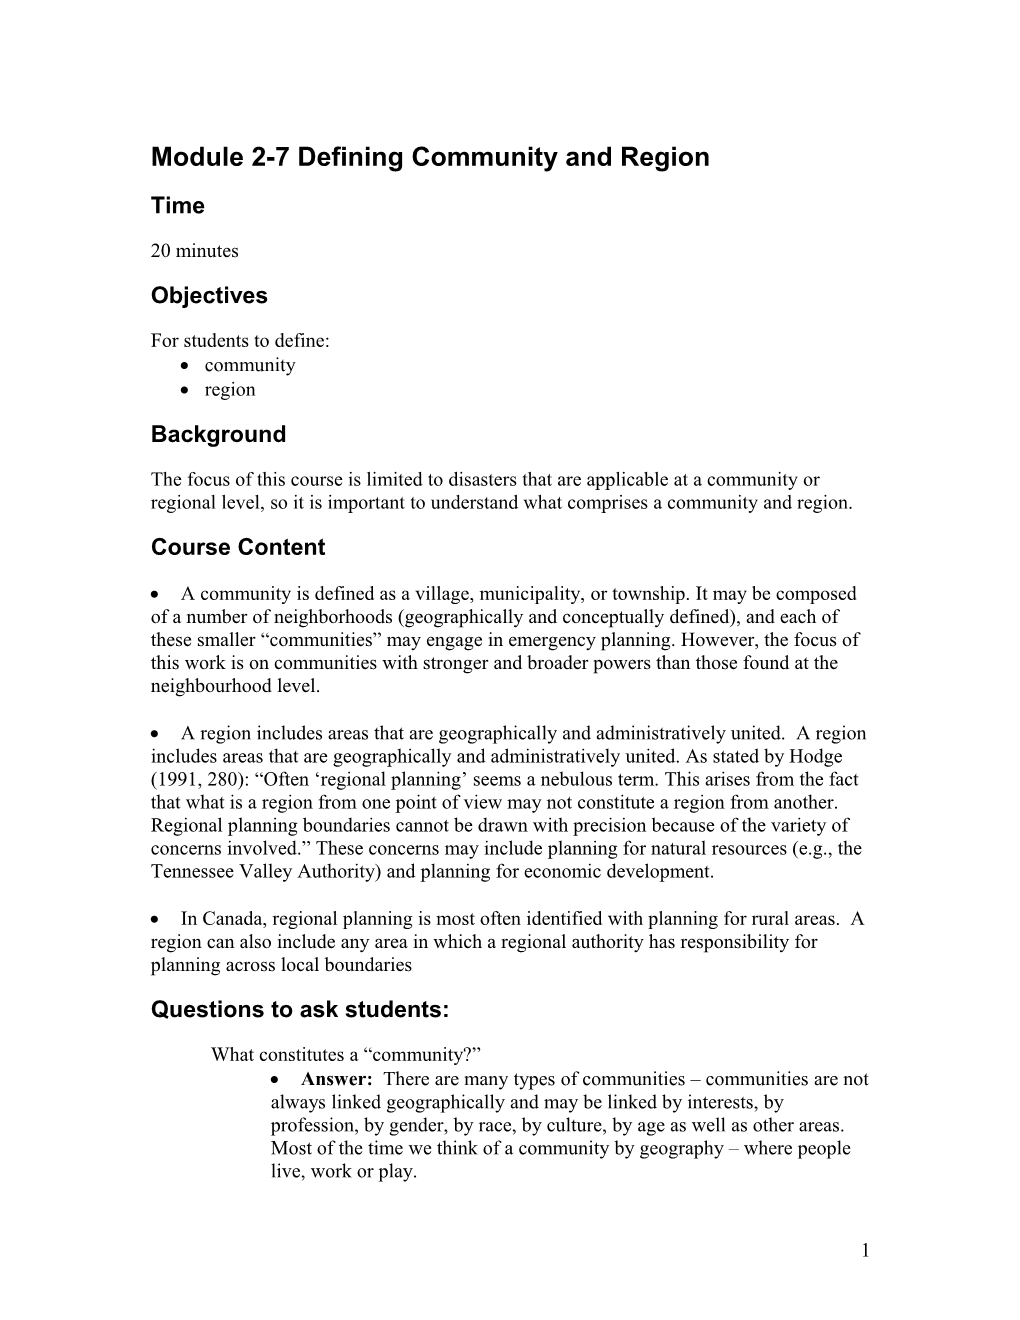 Module 2-7Defining Community and Region